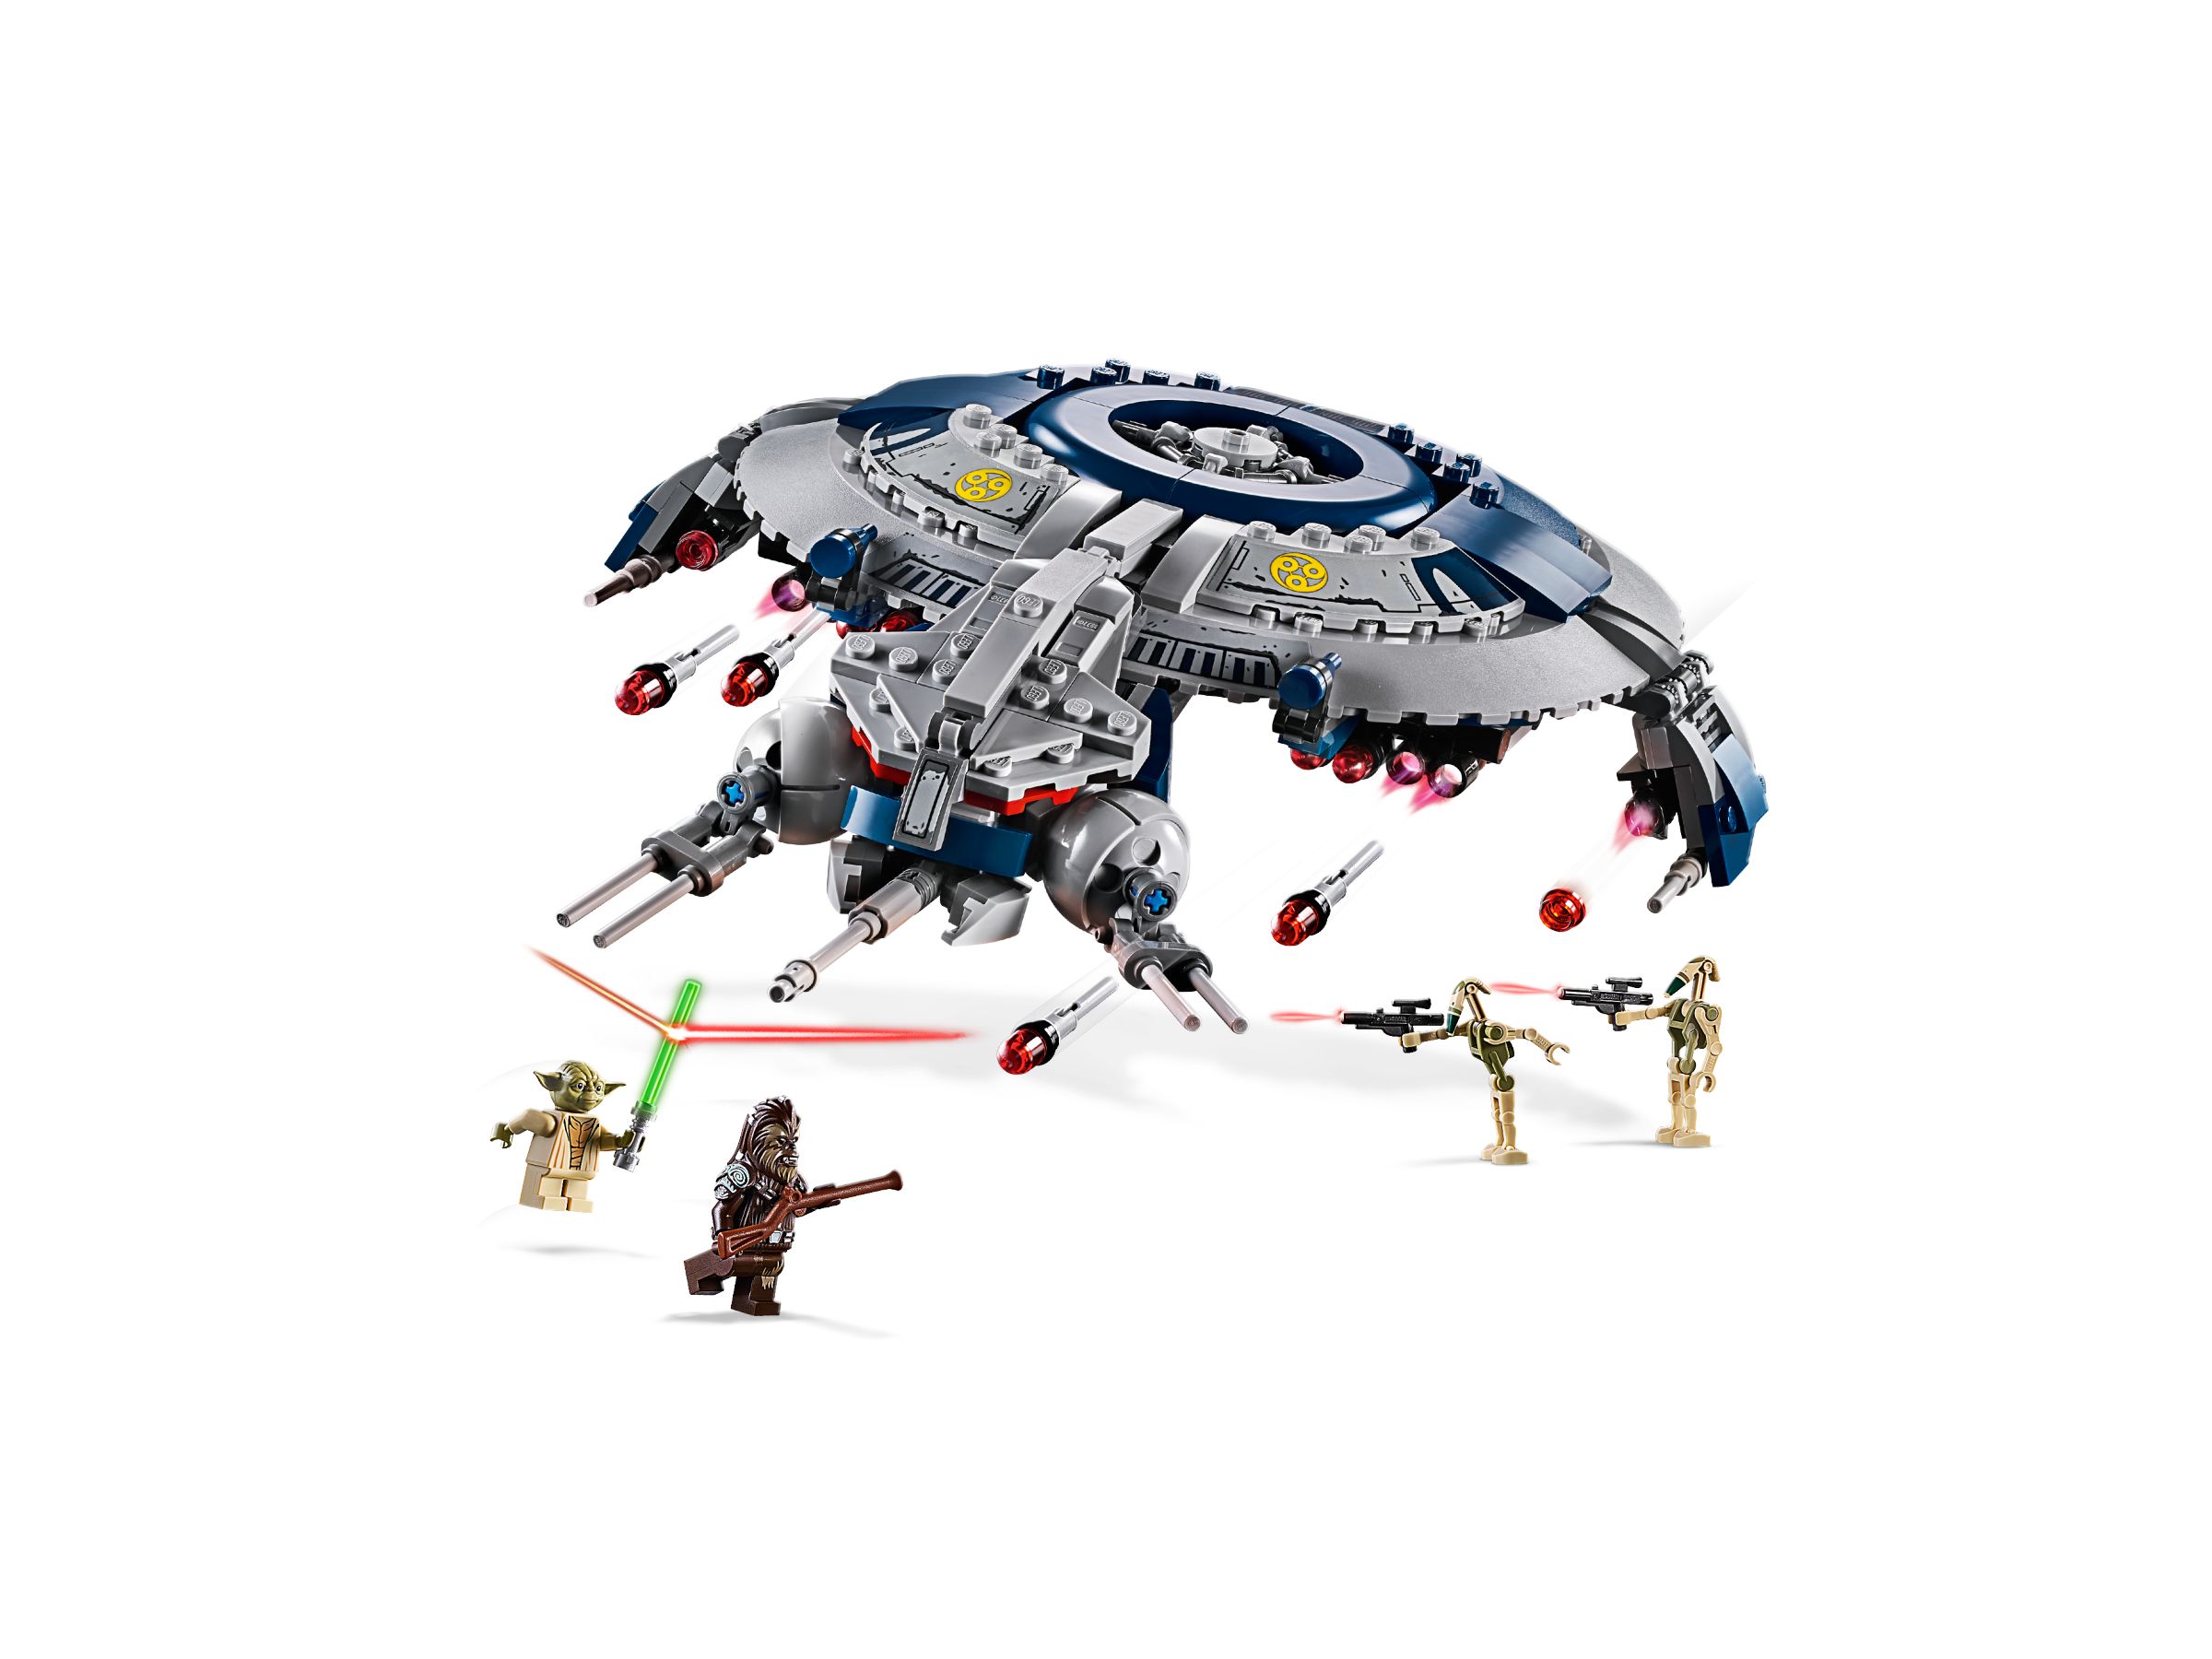 LEGO Star Wars 75233 Droid Gunship LEGO_75233_alt2.jpg